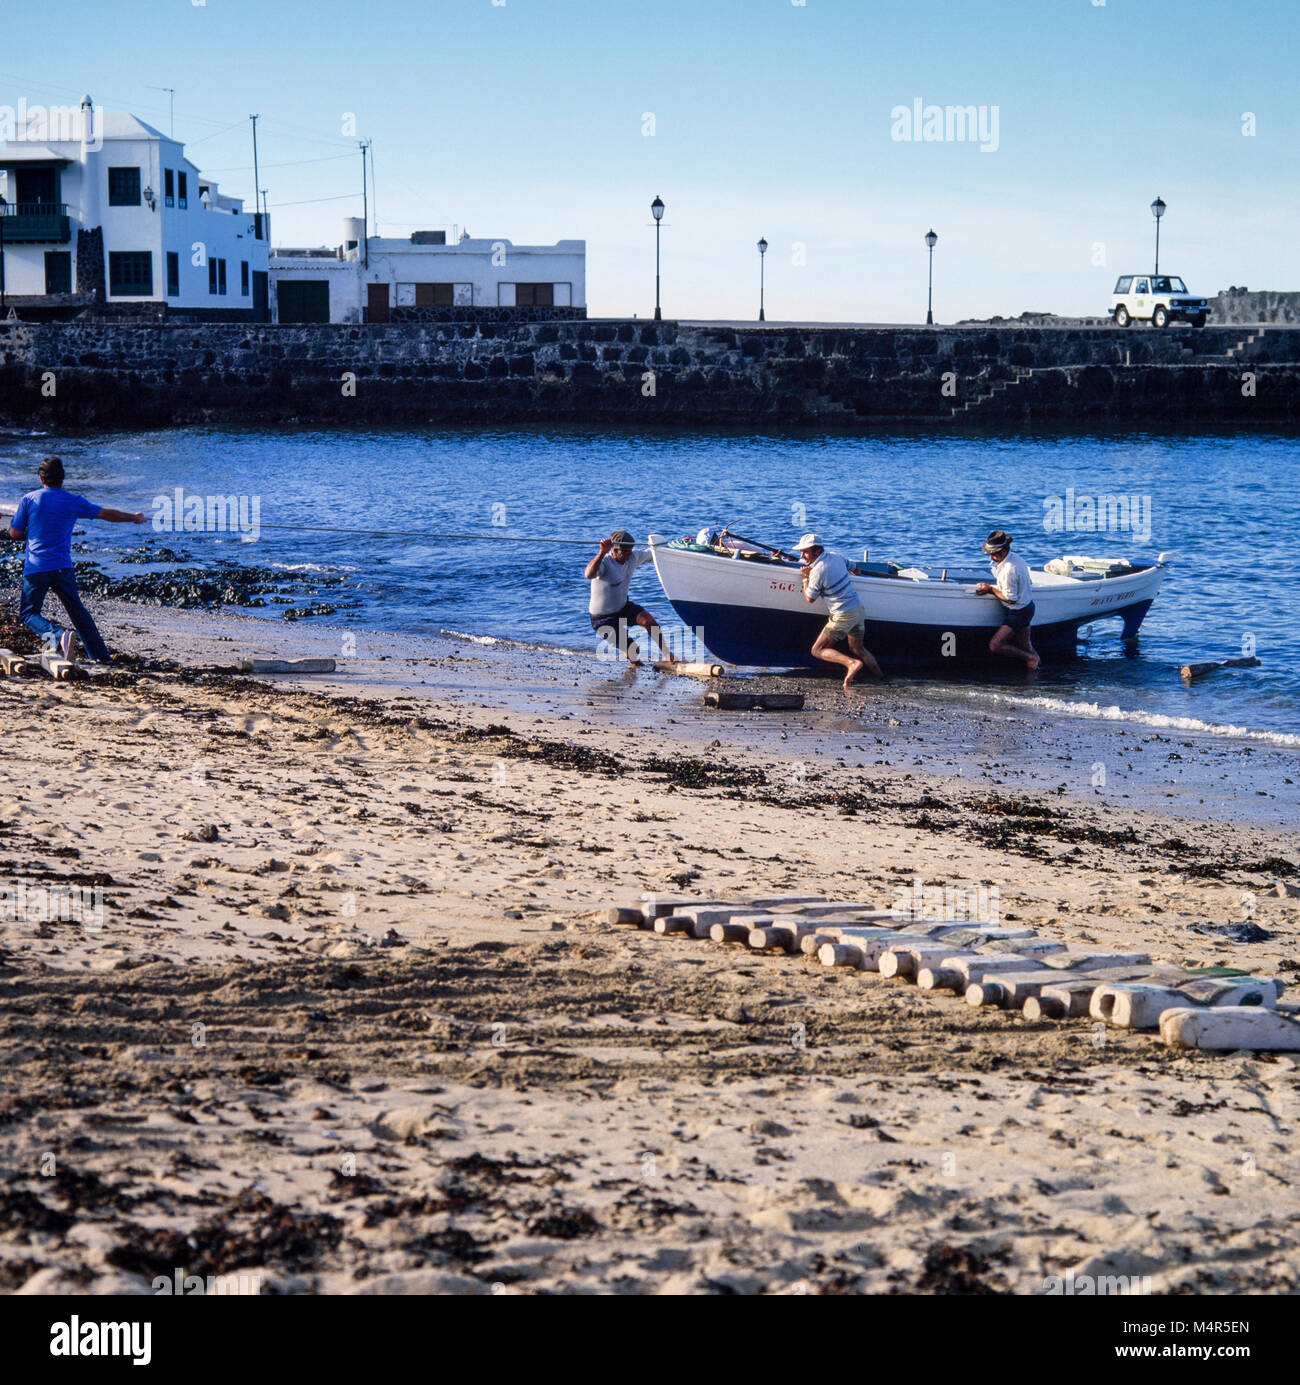 Los pescadores y familia, acarreando una embarcación desde el mar hasta la playa en Lanzarote, Islas Canarias, España, archivo de fotografía de enero de 1988 Foto de stock